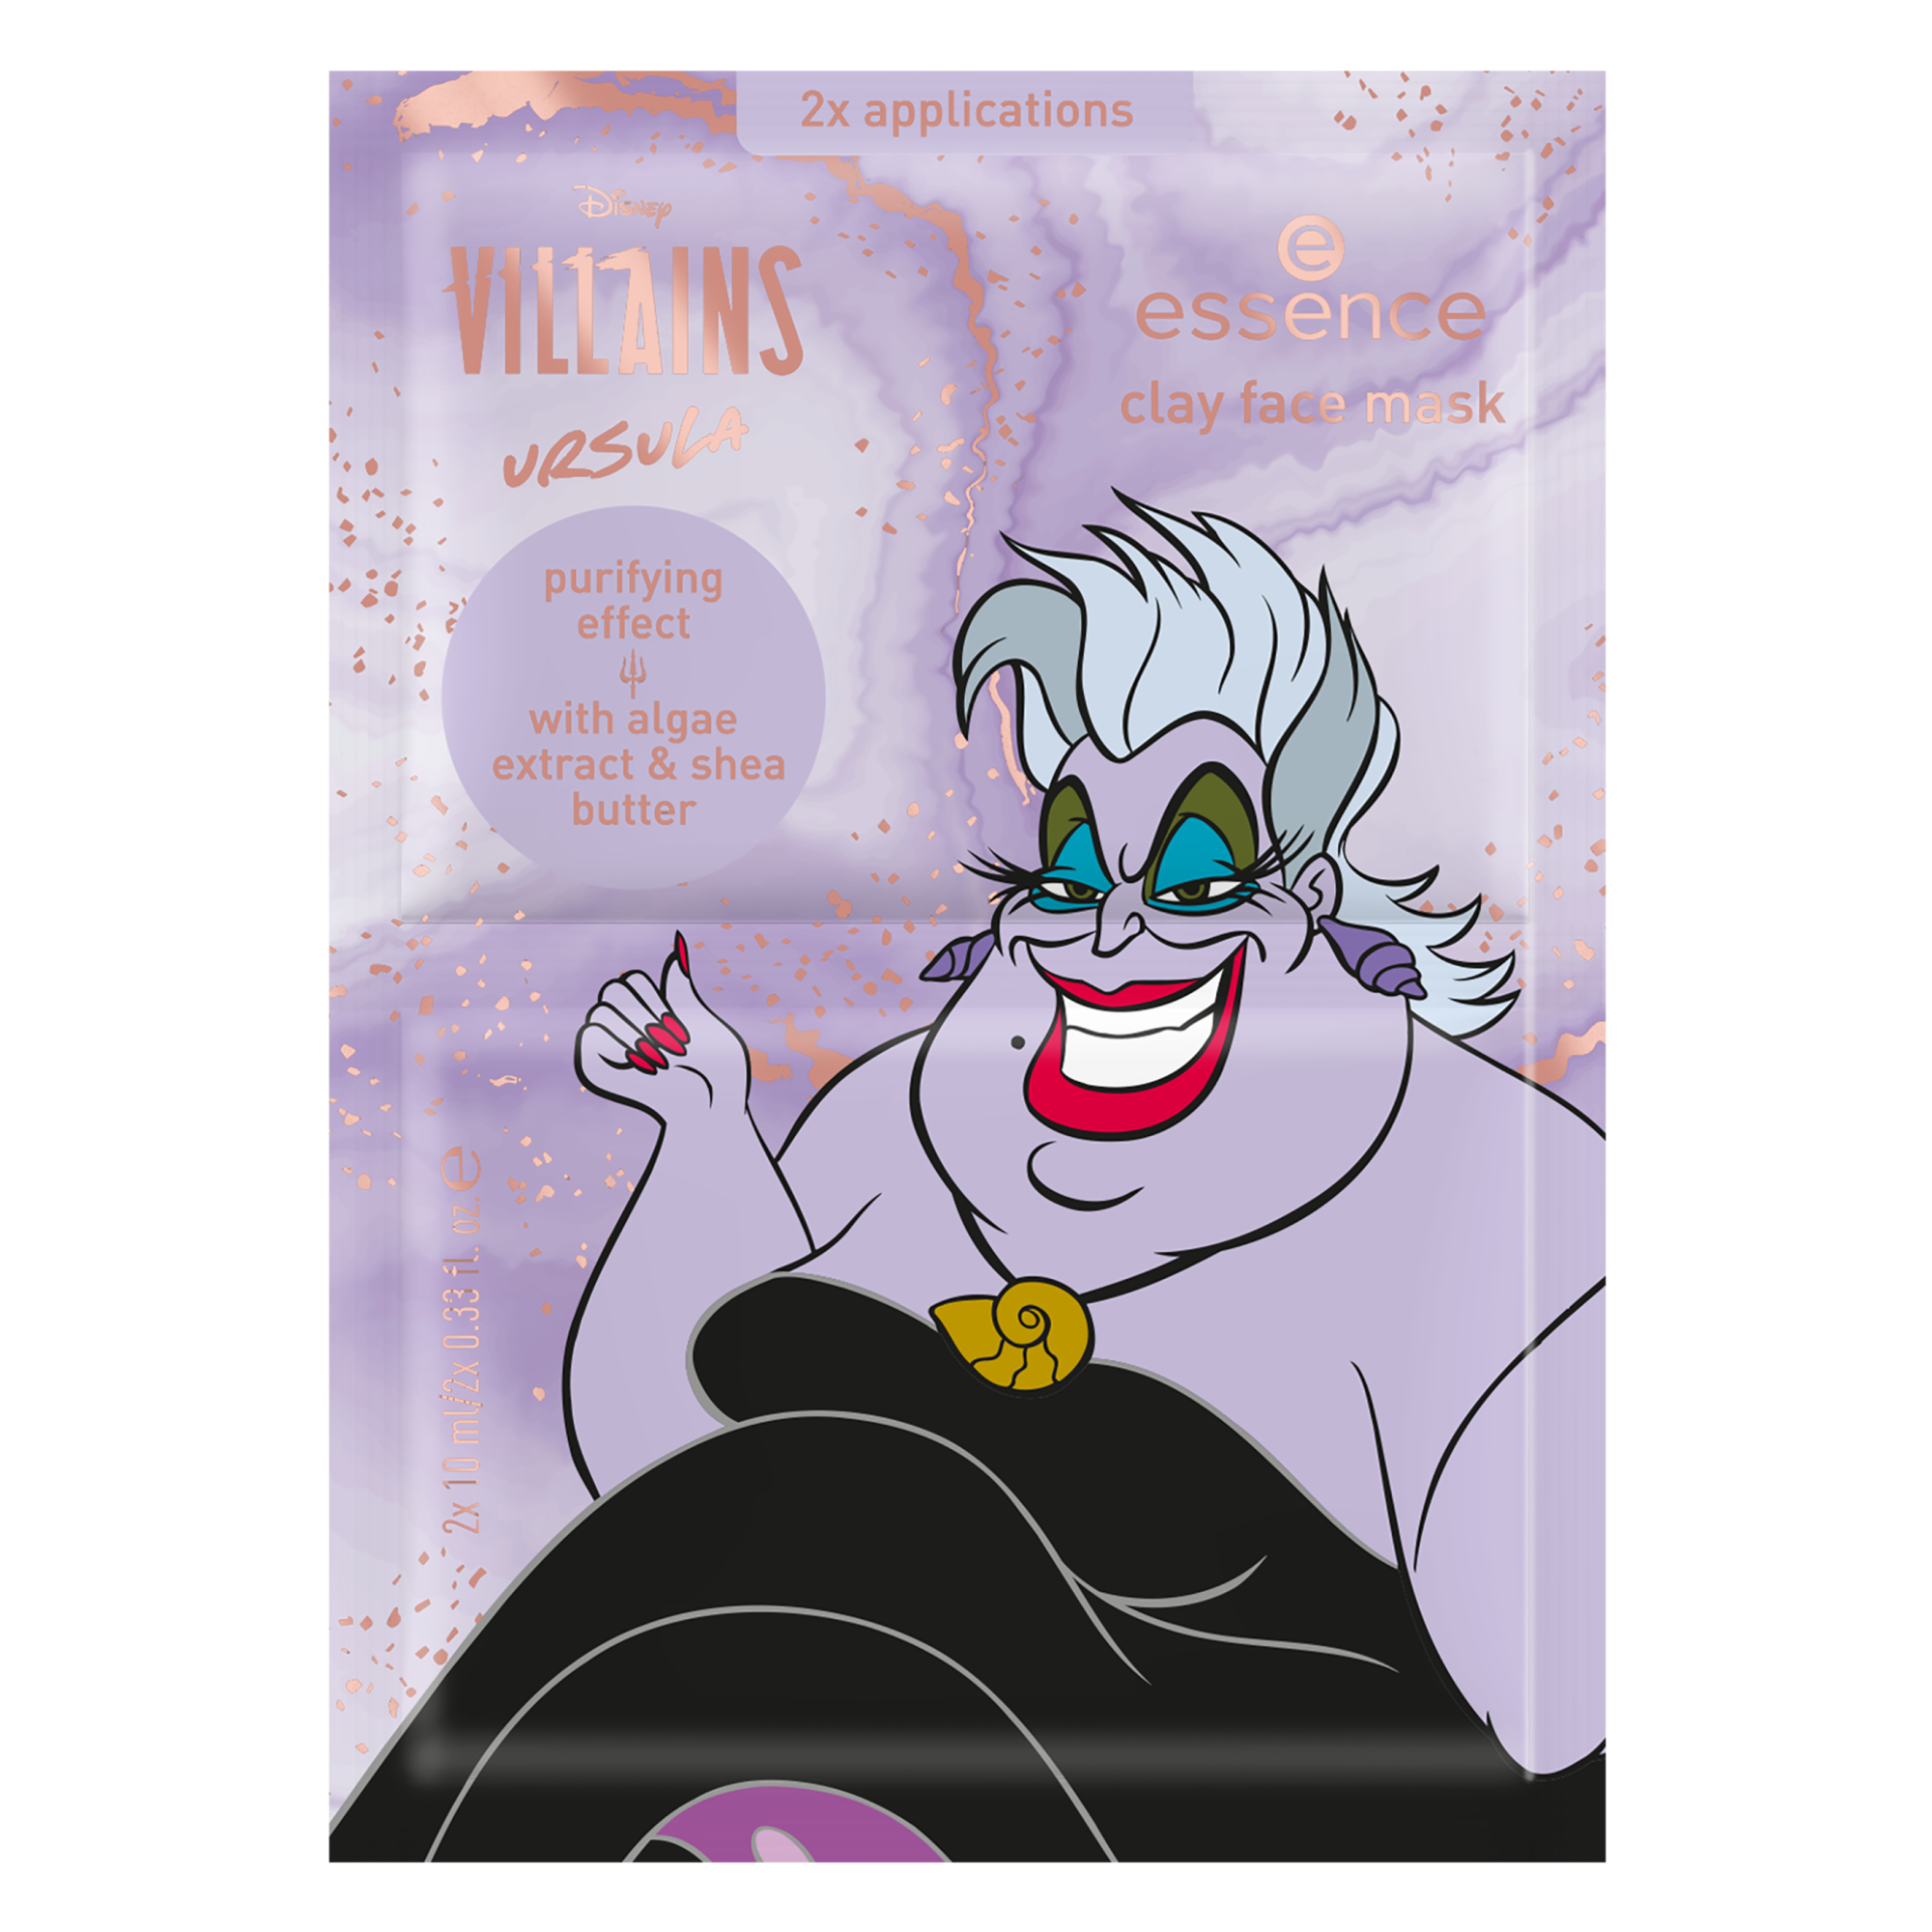 Disney Villains Ursula clay face mask